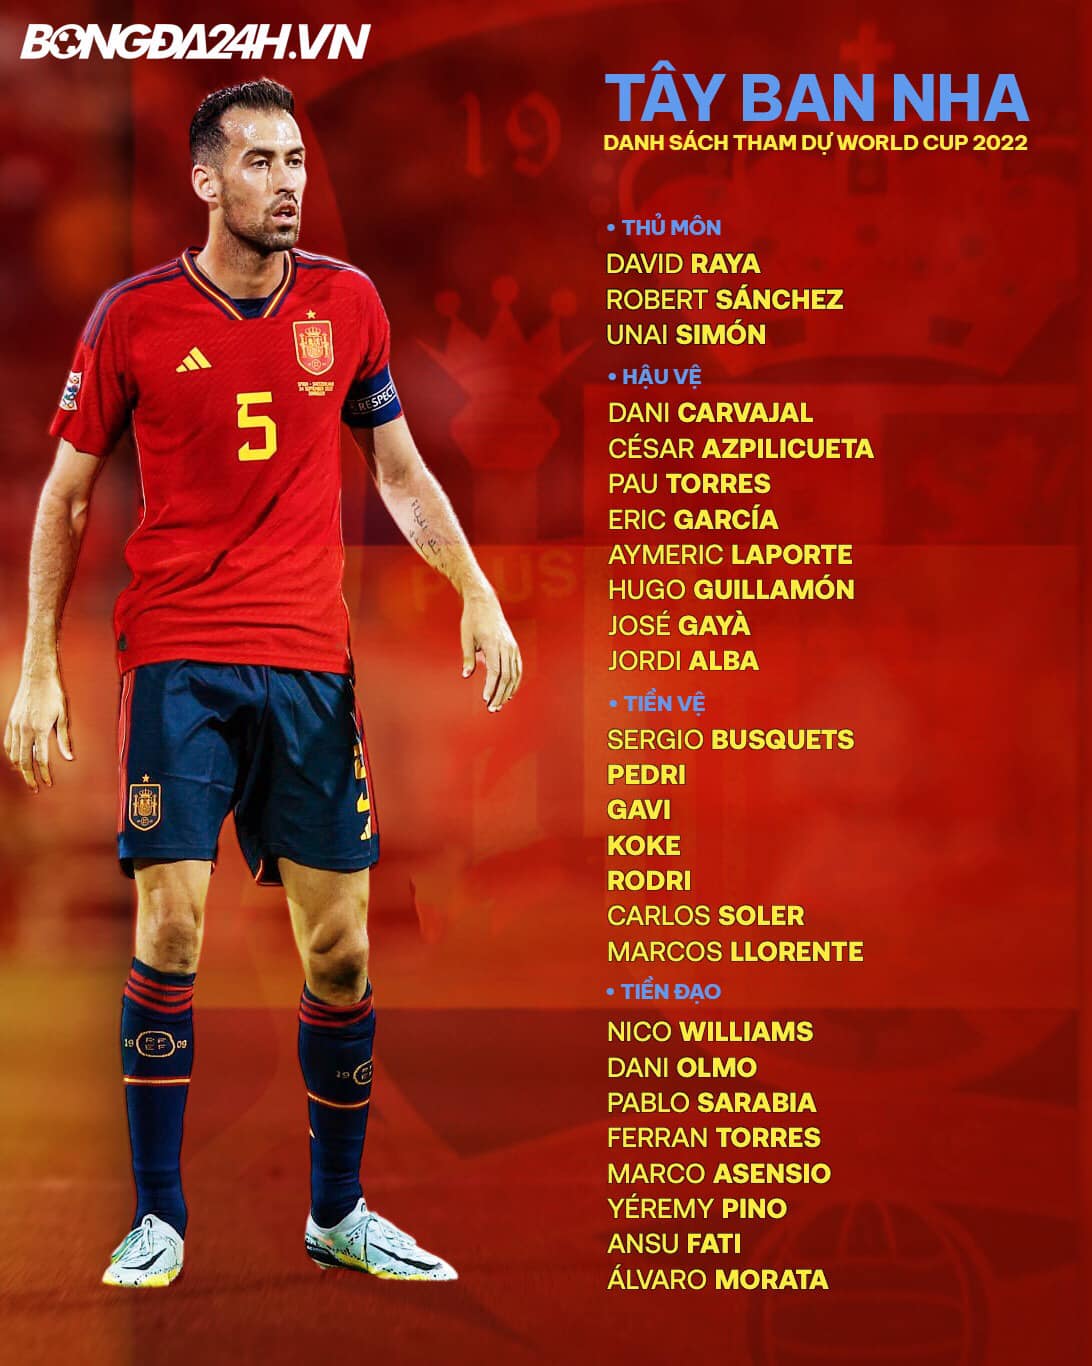 Lịch thi đấu của ĐT Tây Ban Nha tại VCK World Cup 2022 1